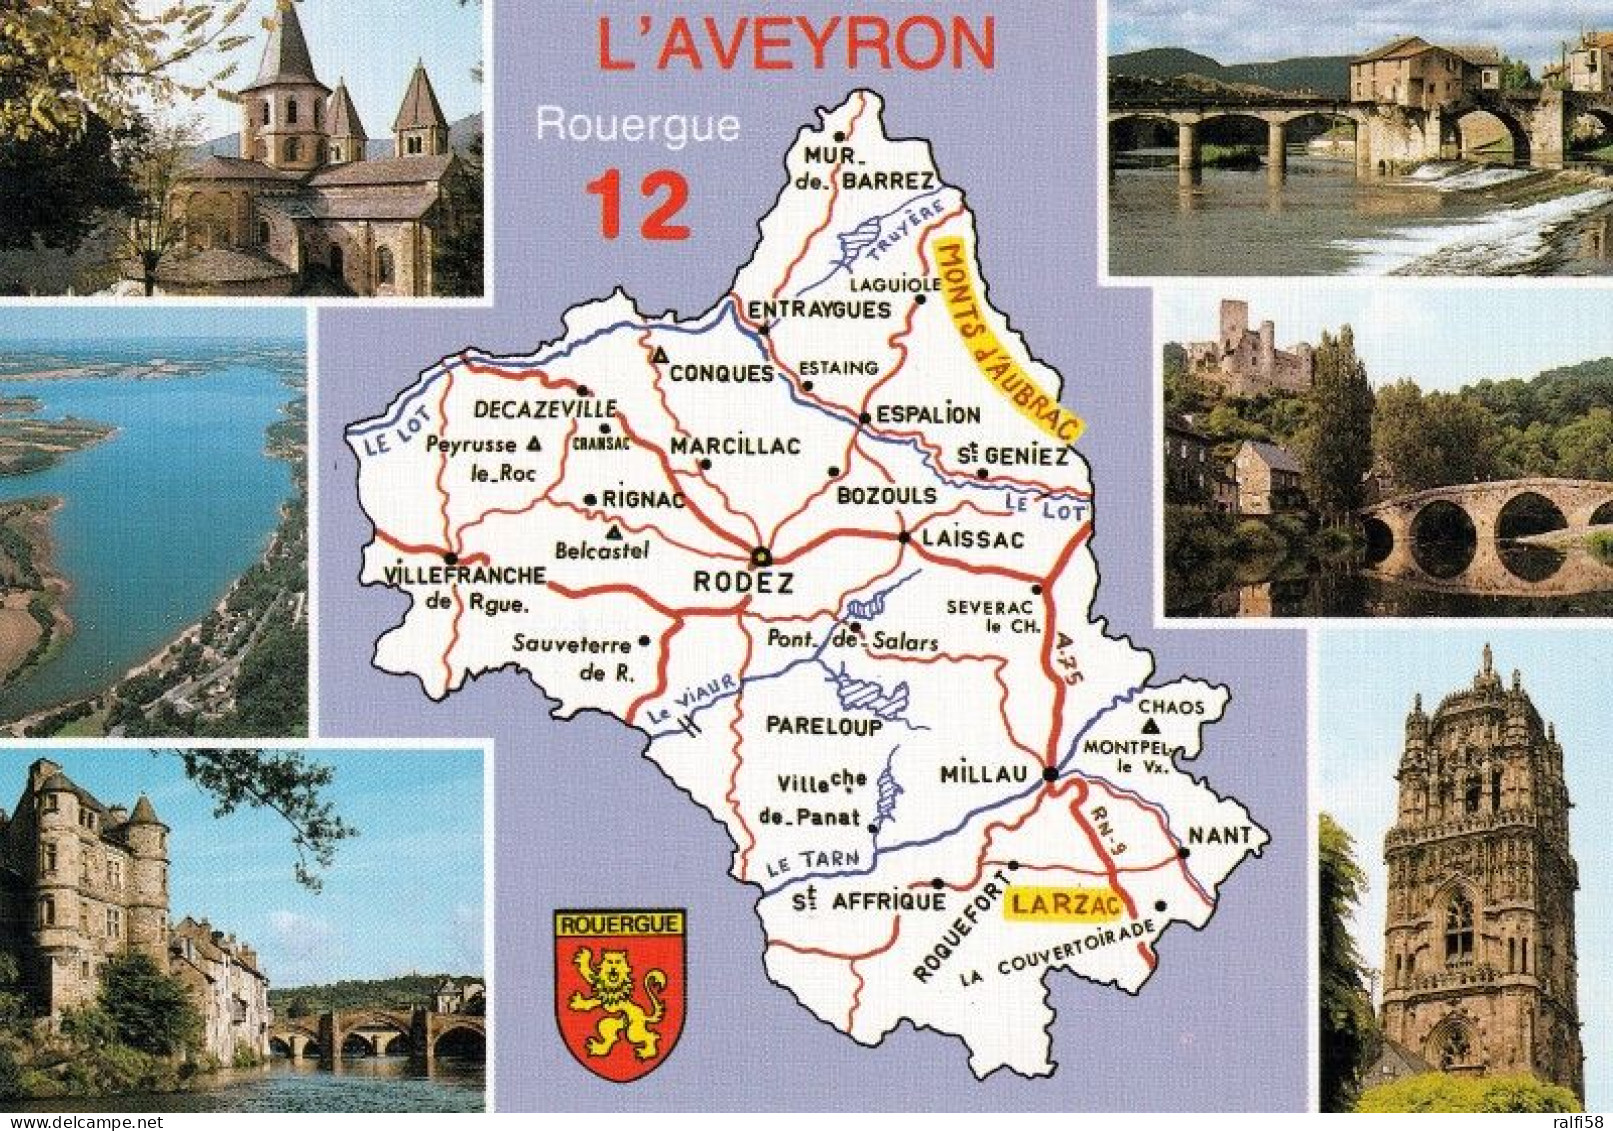 2 Map Of France * 2 Ansichtskarten Mit Der Landkarte - Département Aveyron Und Sehenswürdigkeiten - Ordnungsnummer 12 * - Maps